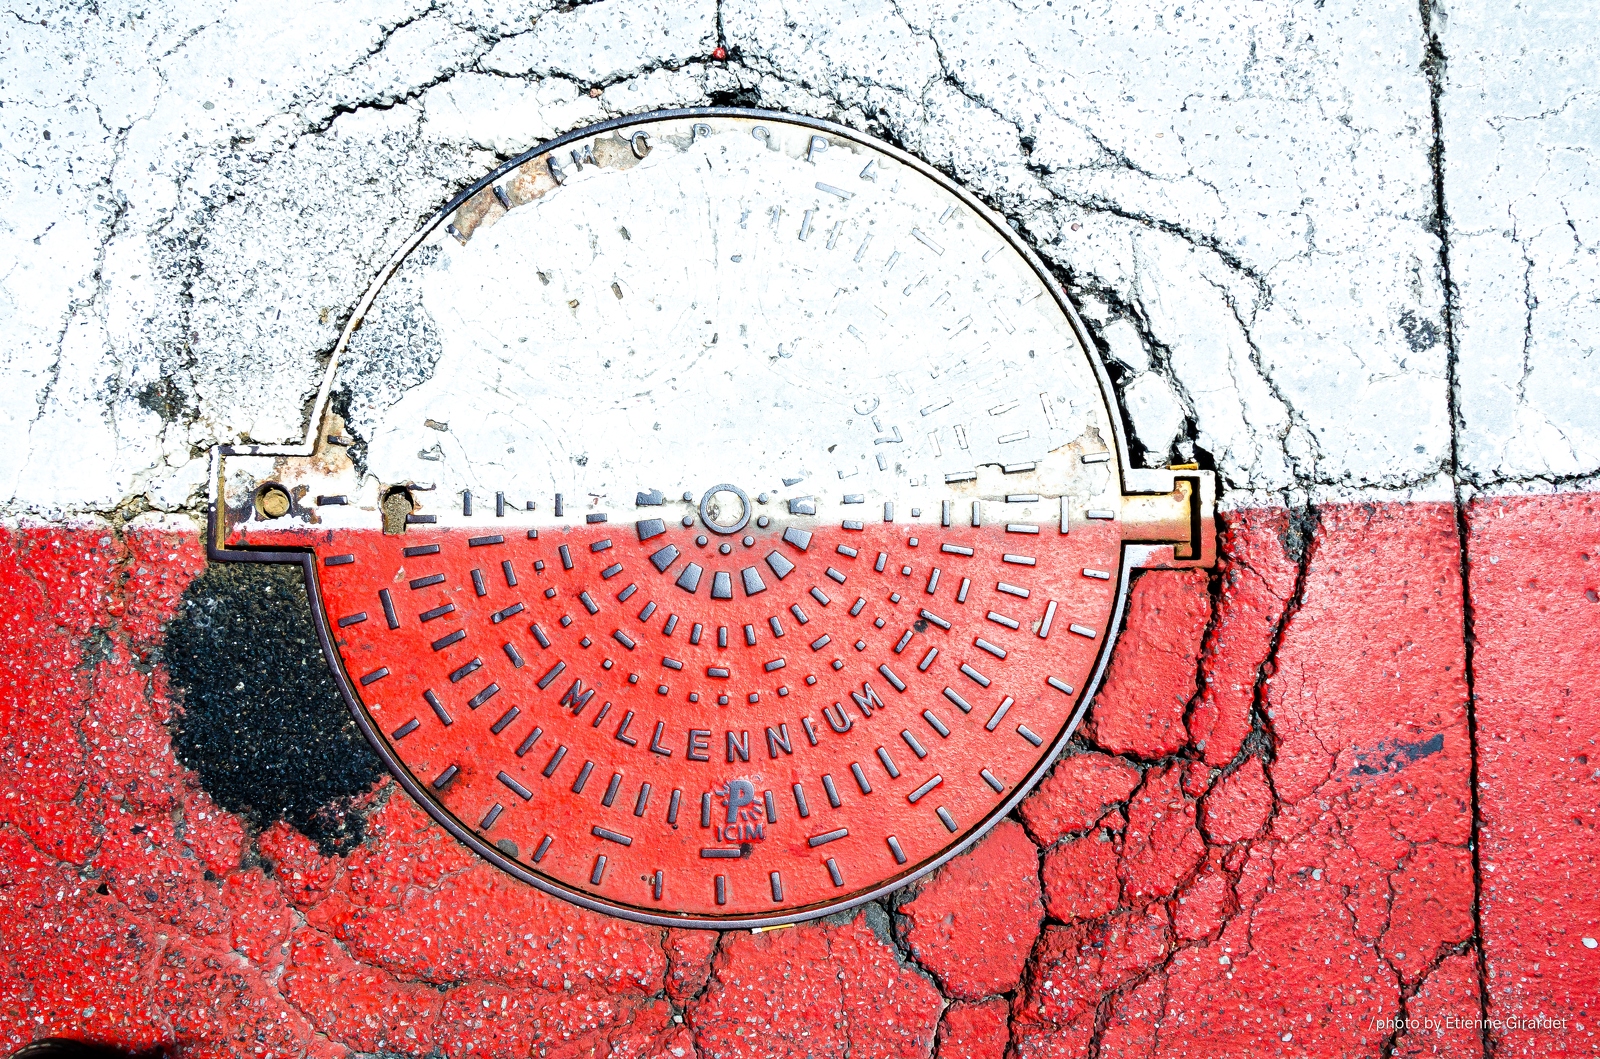 201107_25_DSC_4864-manhole-cover--by-E-Girardet.jpg